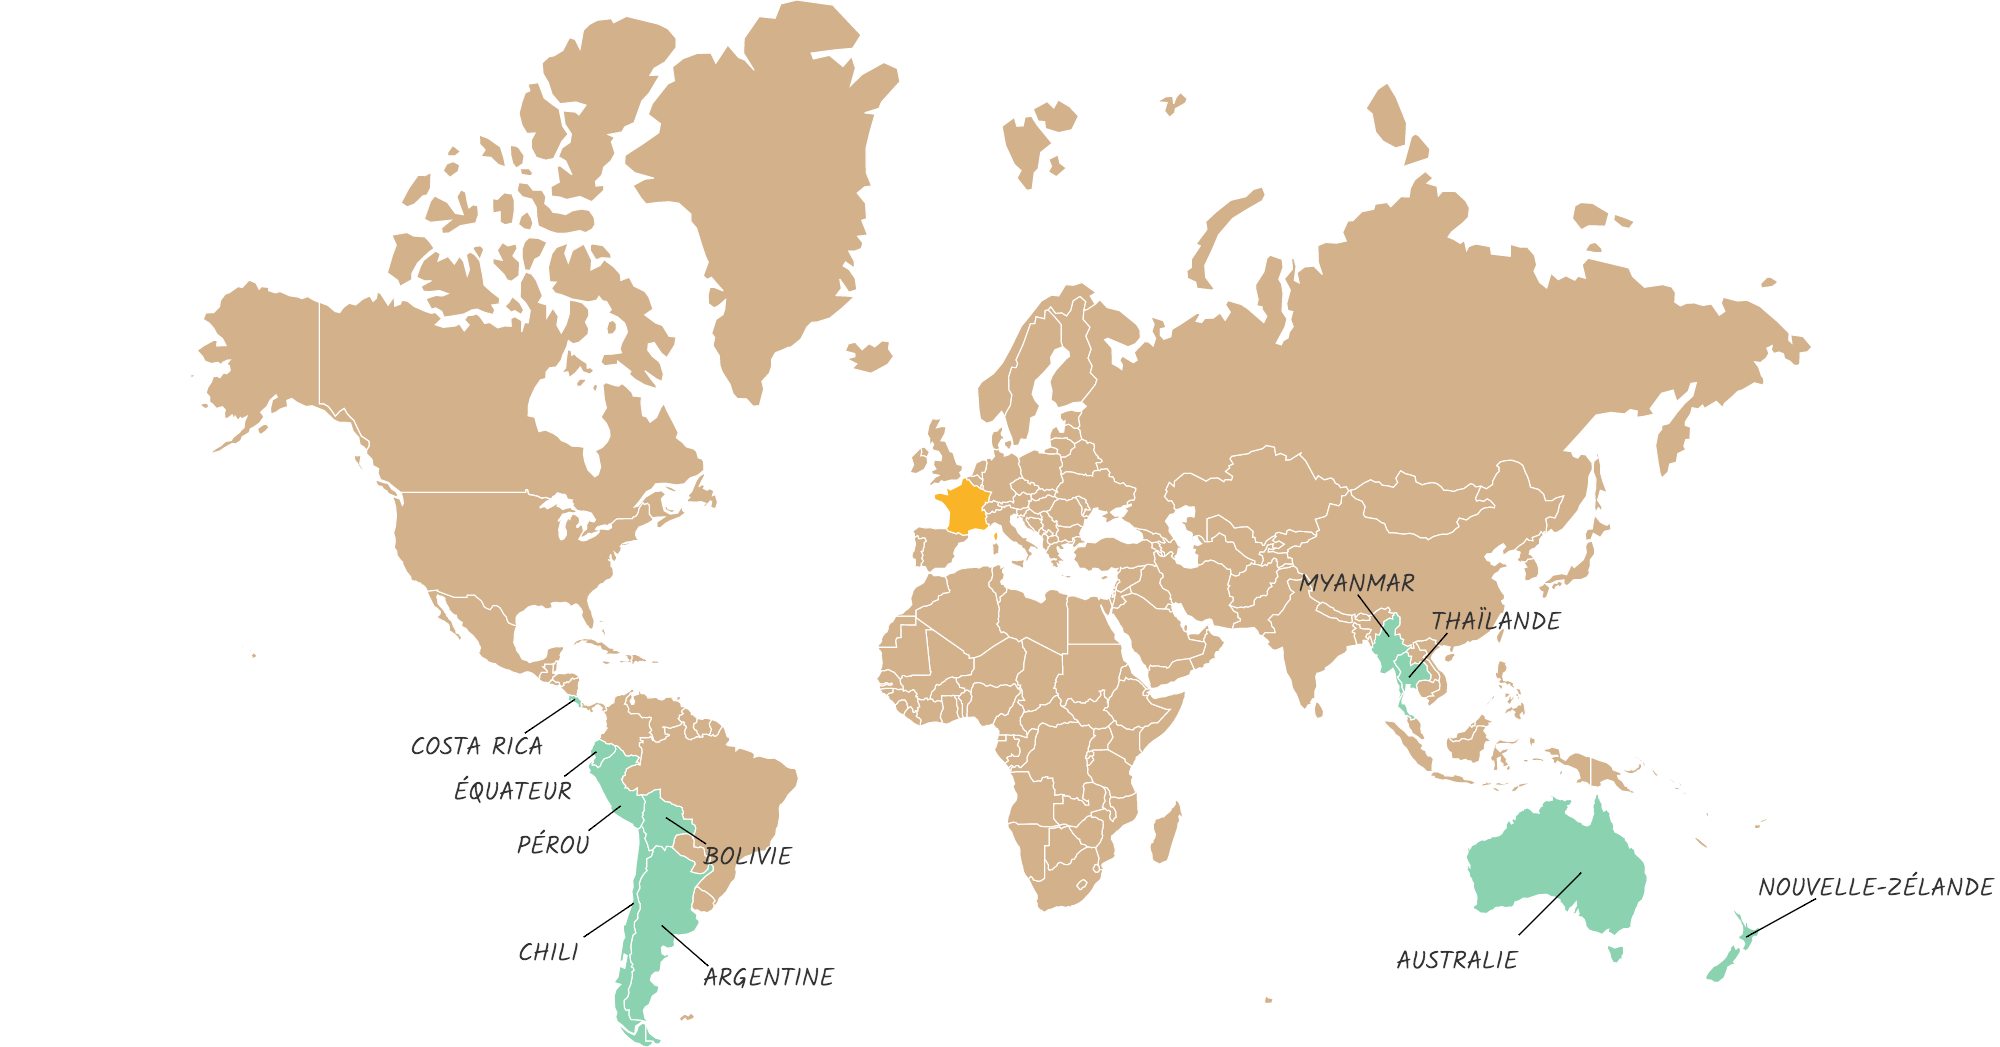 Carte du monde avec les pays que nous voulons visiter : Myanmar, Thaïlande, Australie, Nouvelle-Zélande, Costa Rica, Chili, Argentine, Bolivie, Pérou et Équateur